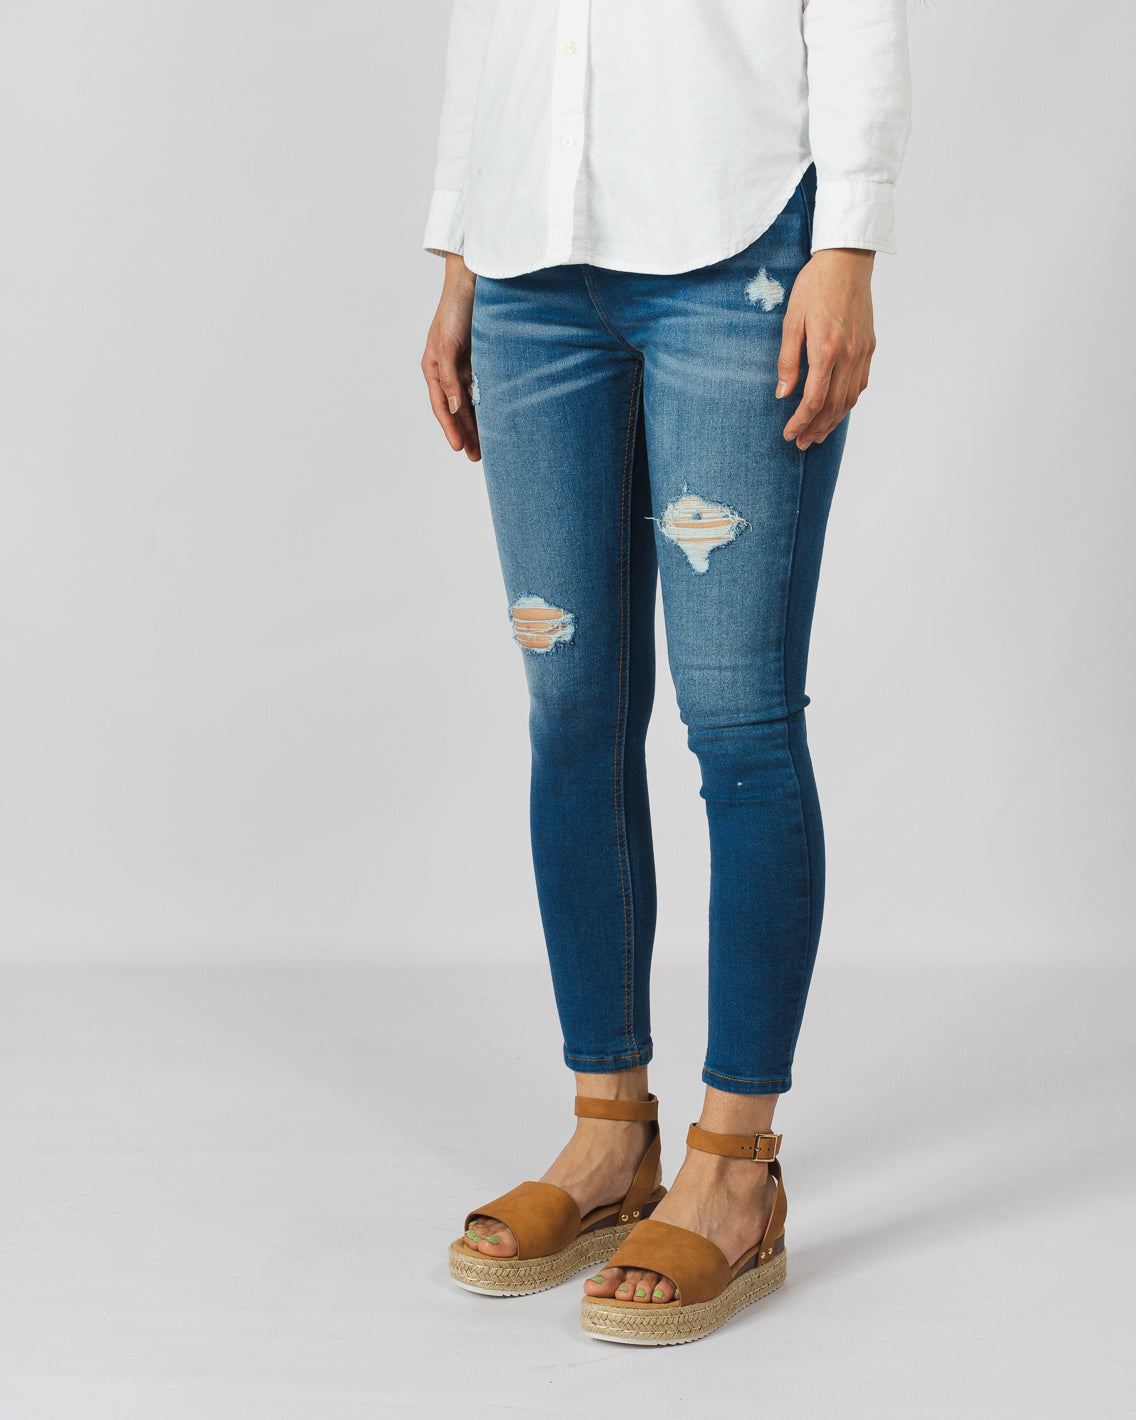 Skinny Jeans mujer – Progresiva Guatemala